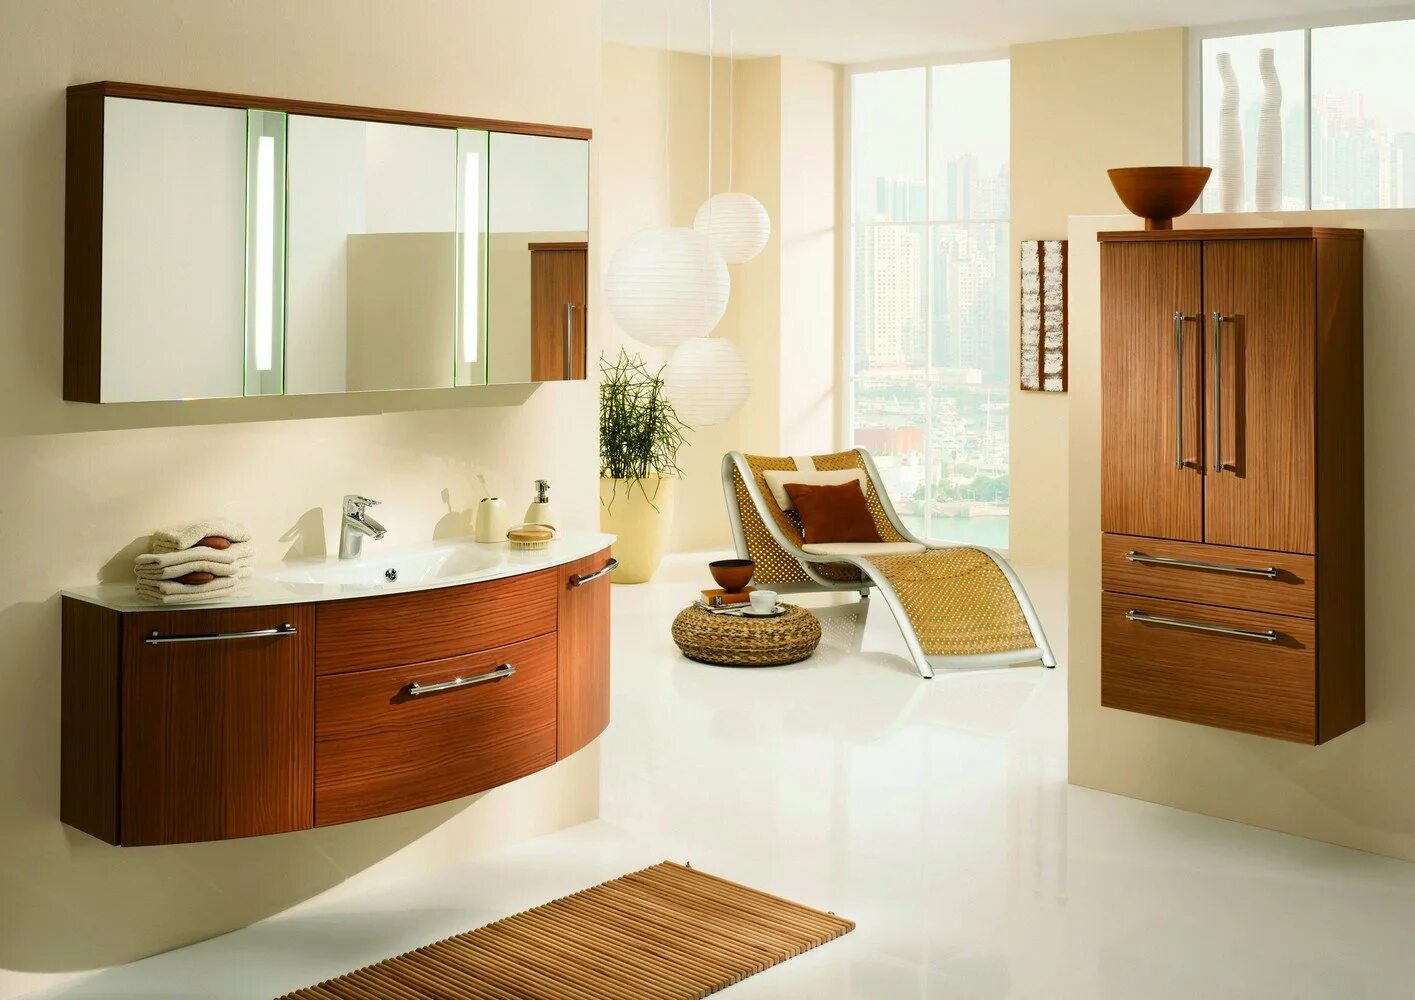 Купить комплект в ванную комнату. Мебель для ванных комнат. Красивая мебель для ванной. Набор мебели для ванной комнаты. Красивые комплекты мебели для ванной.